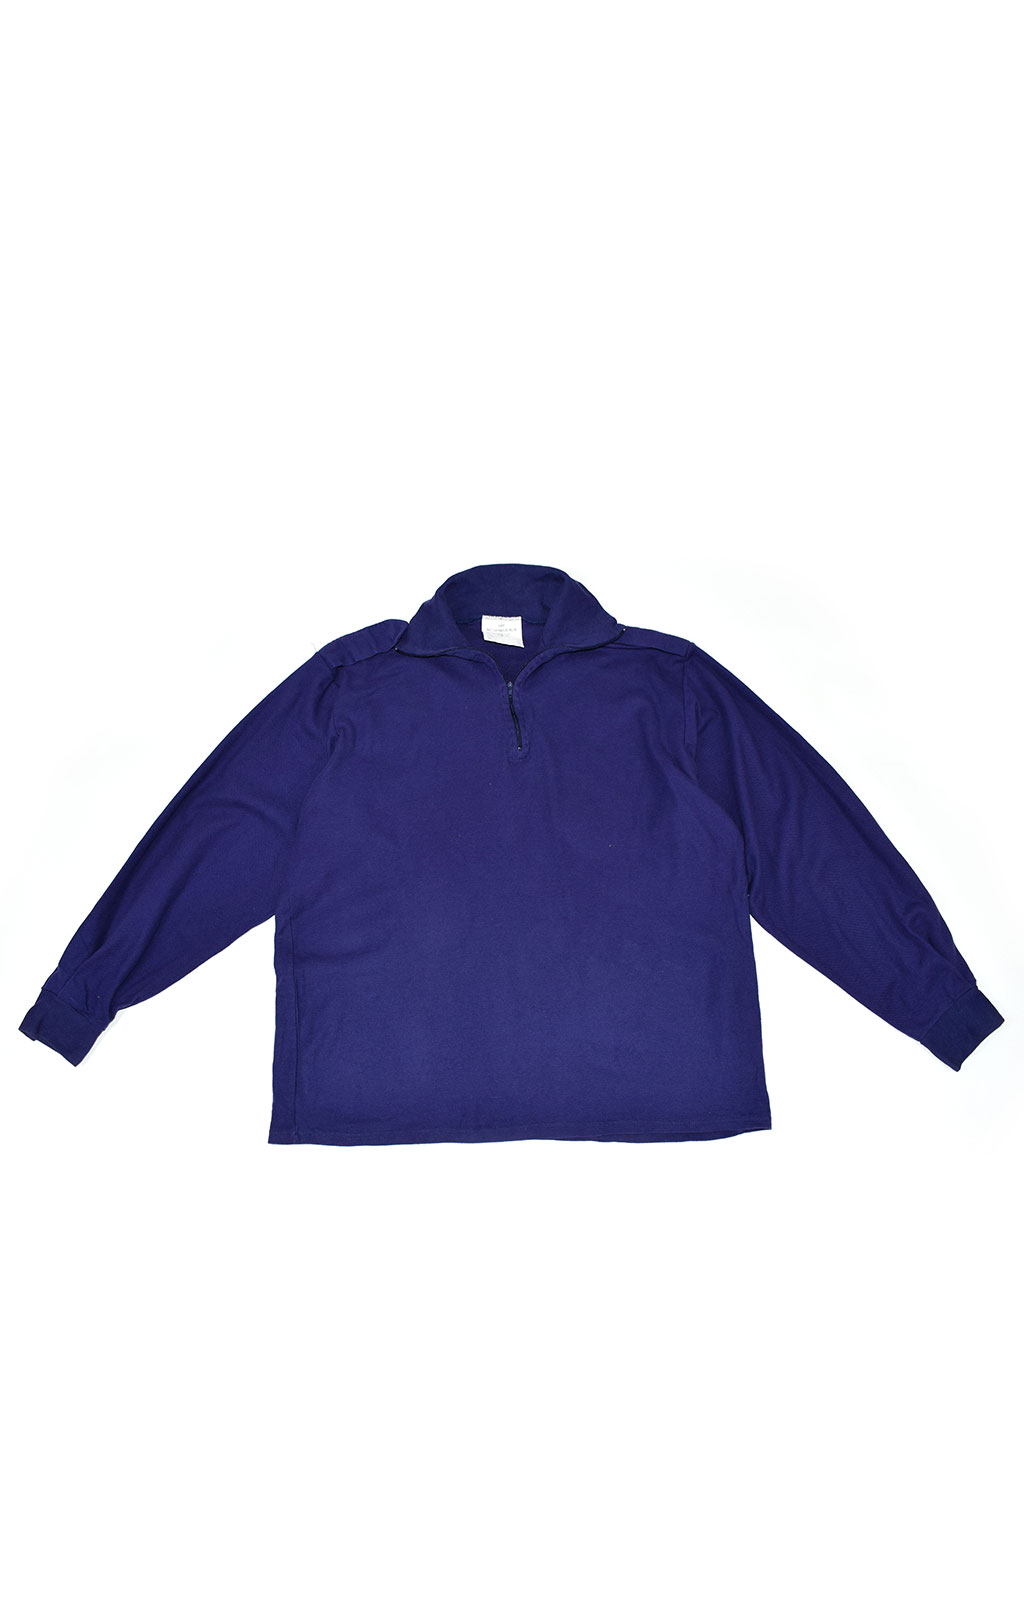 Толстовка Zipp Shirt AWD Lightweight FR blue б/у Англия